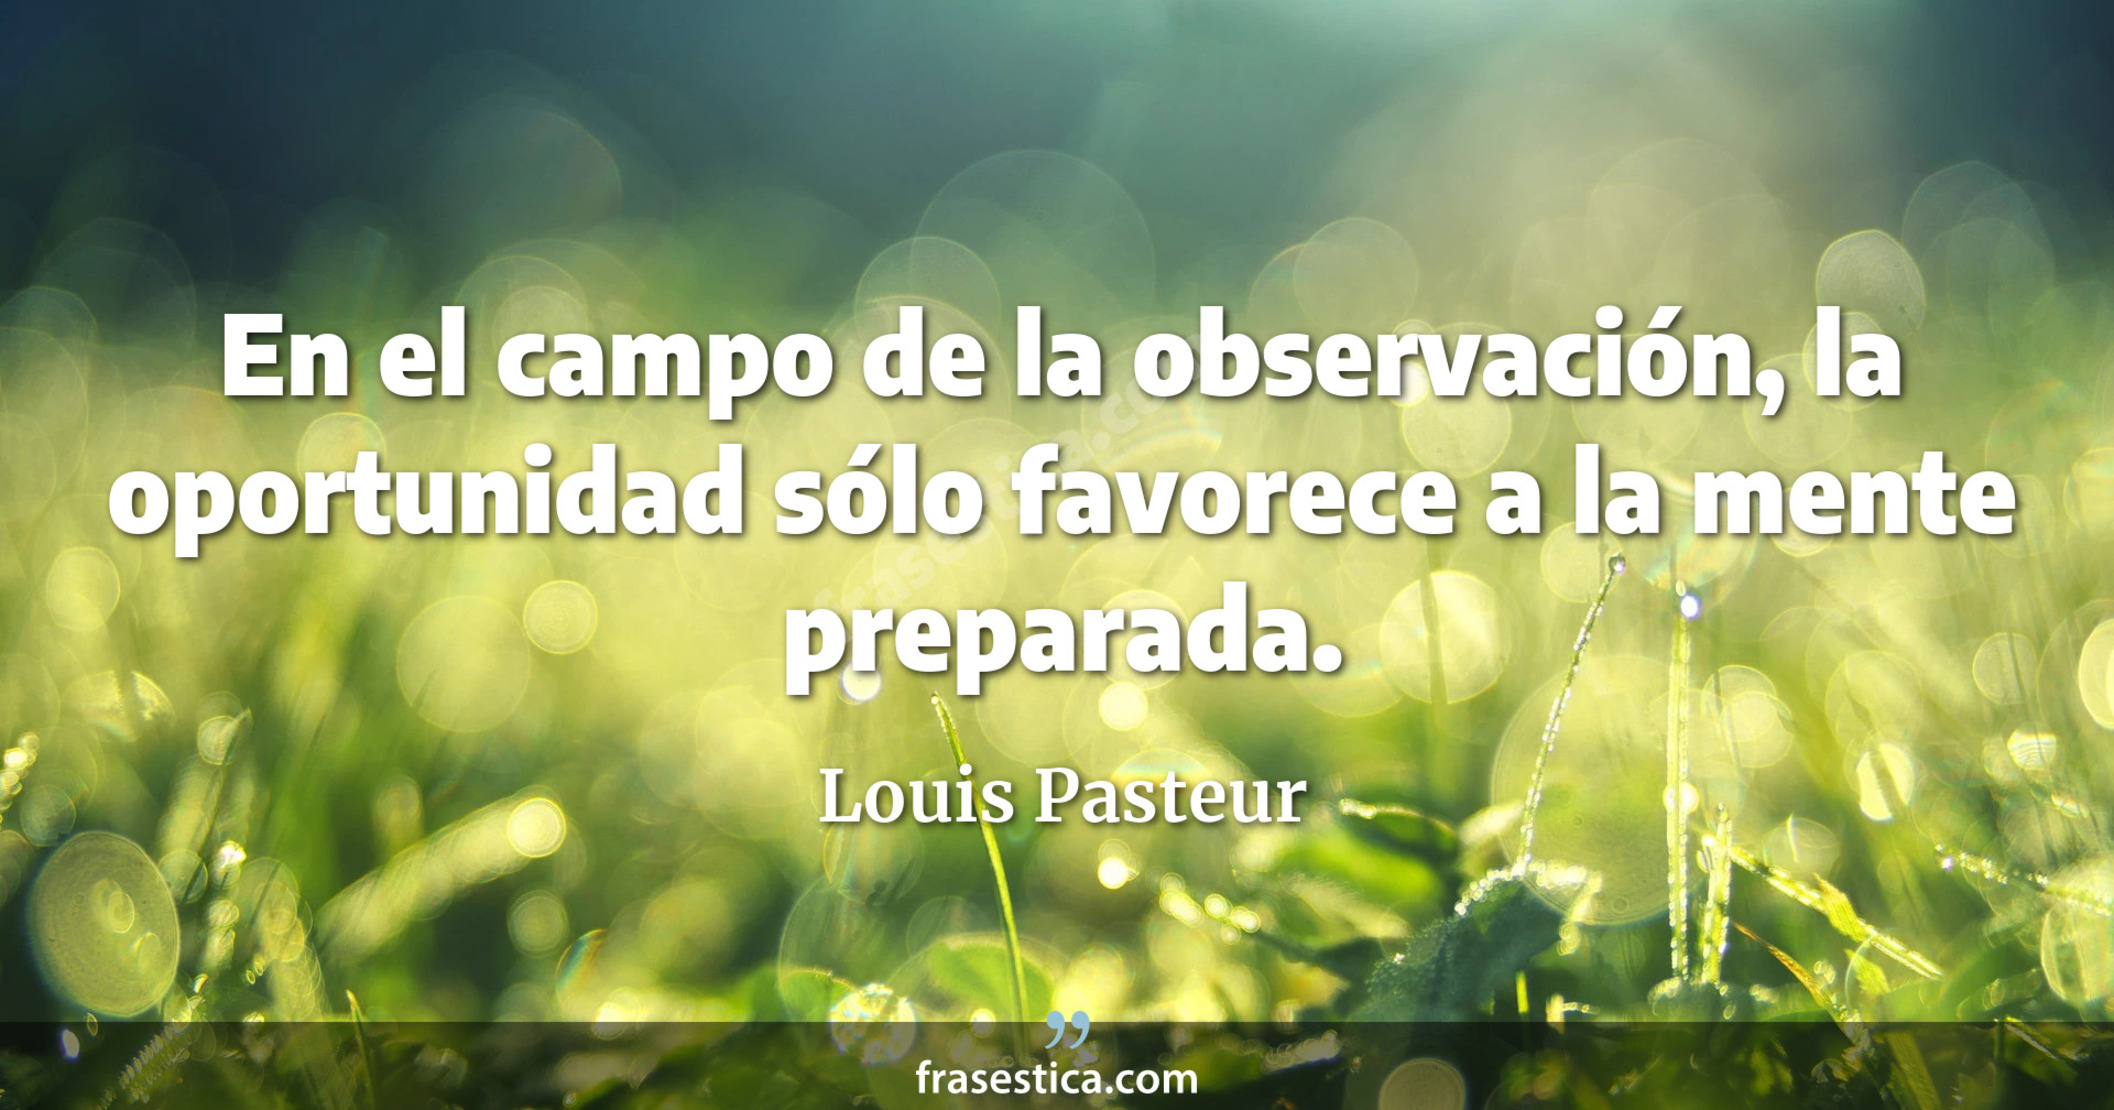 En el campo de la observación, la oportunidad sólo favorece a la mente preparada. - Louis Pasteur